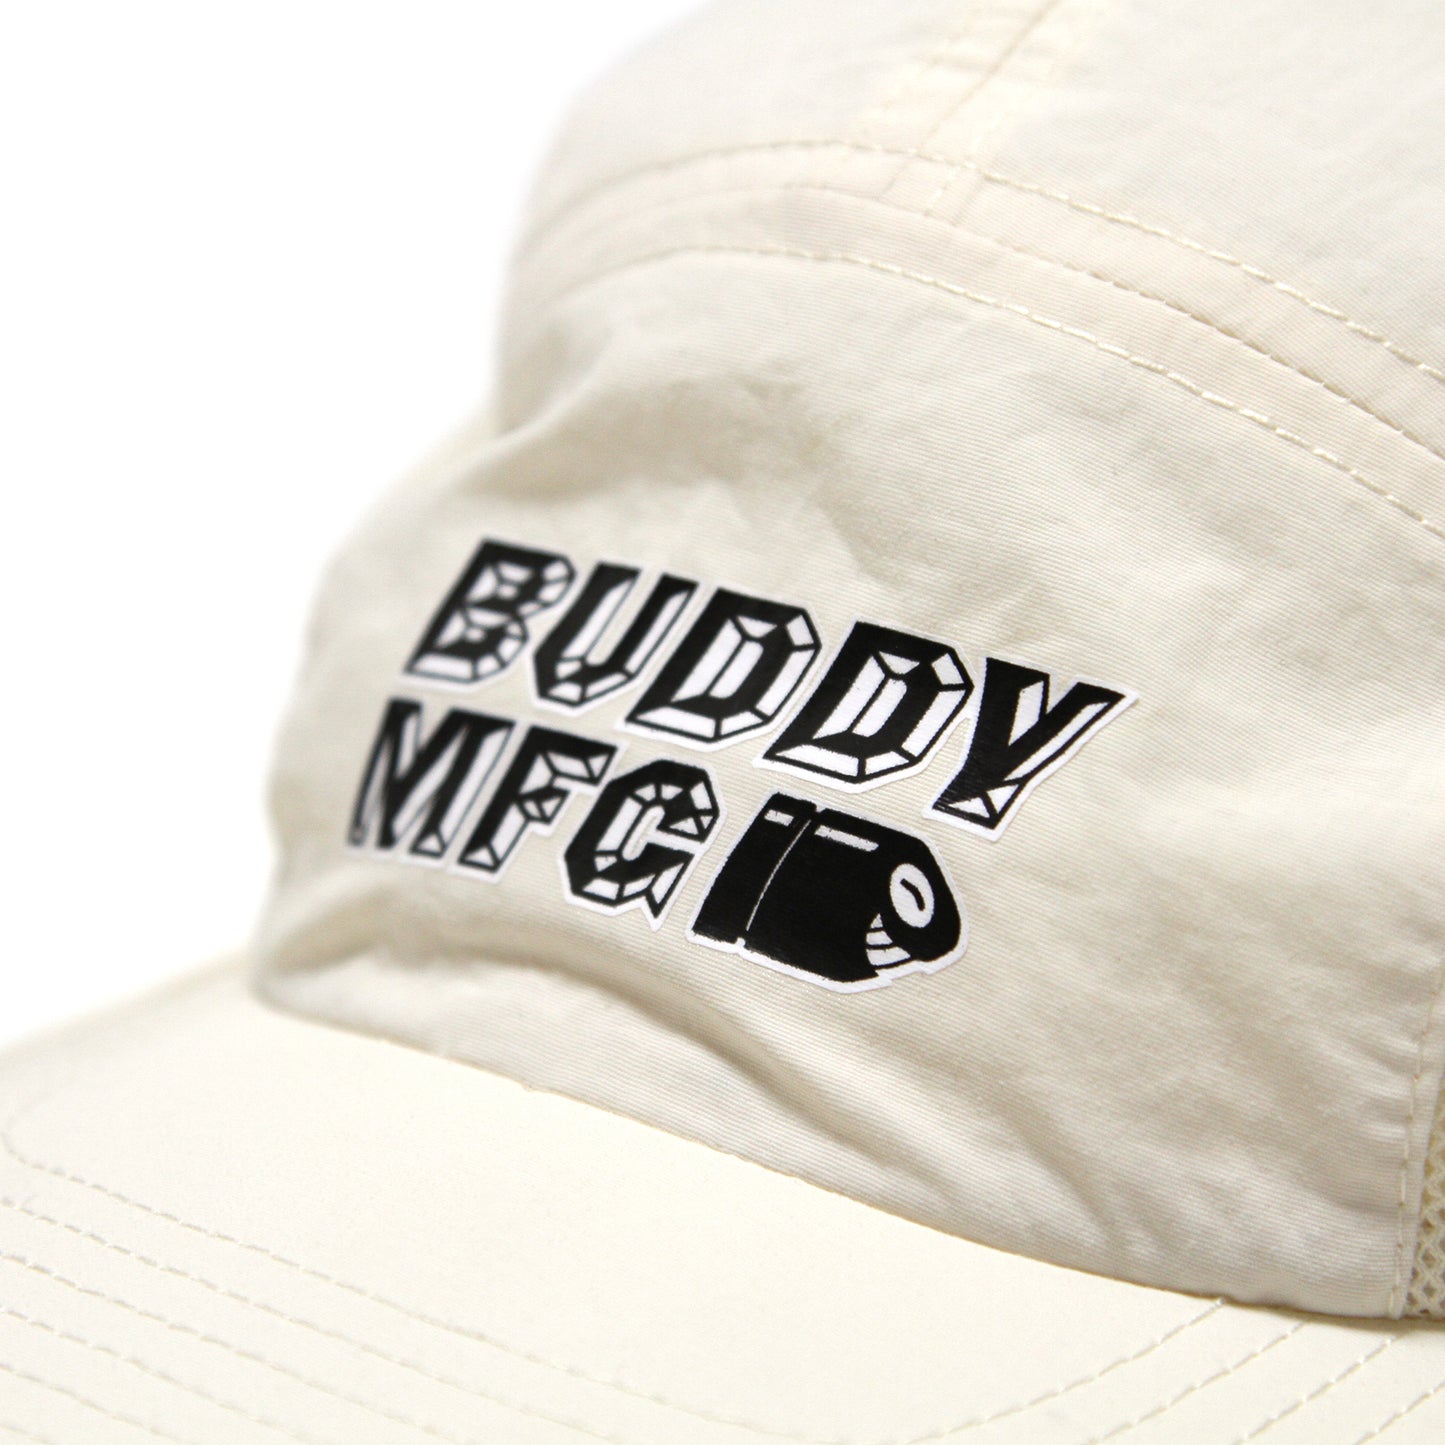 BUDDY MFG - Bustin Cap/Natural